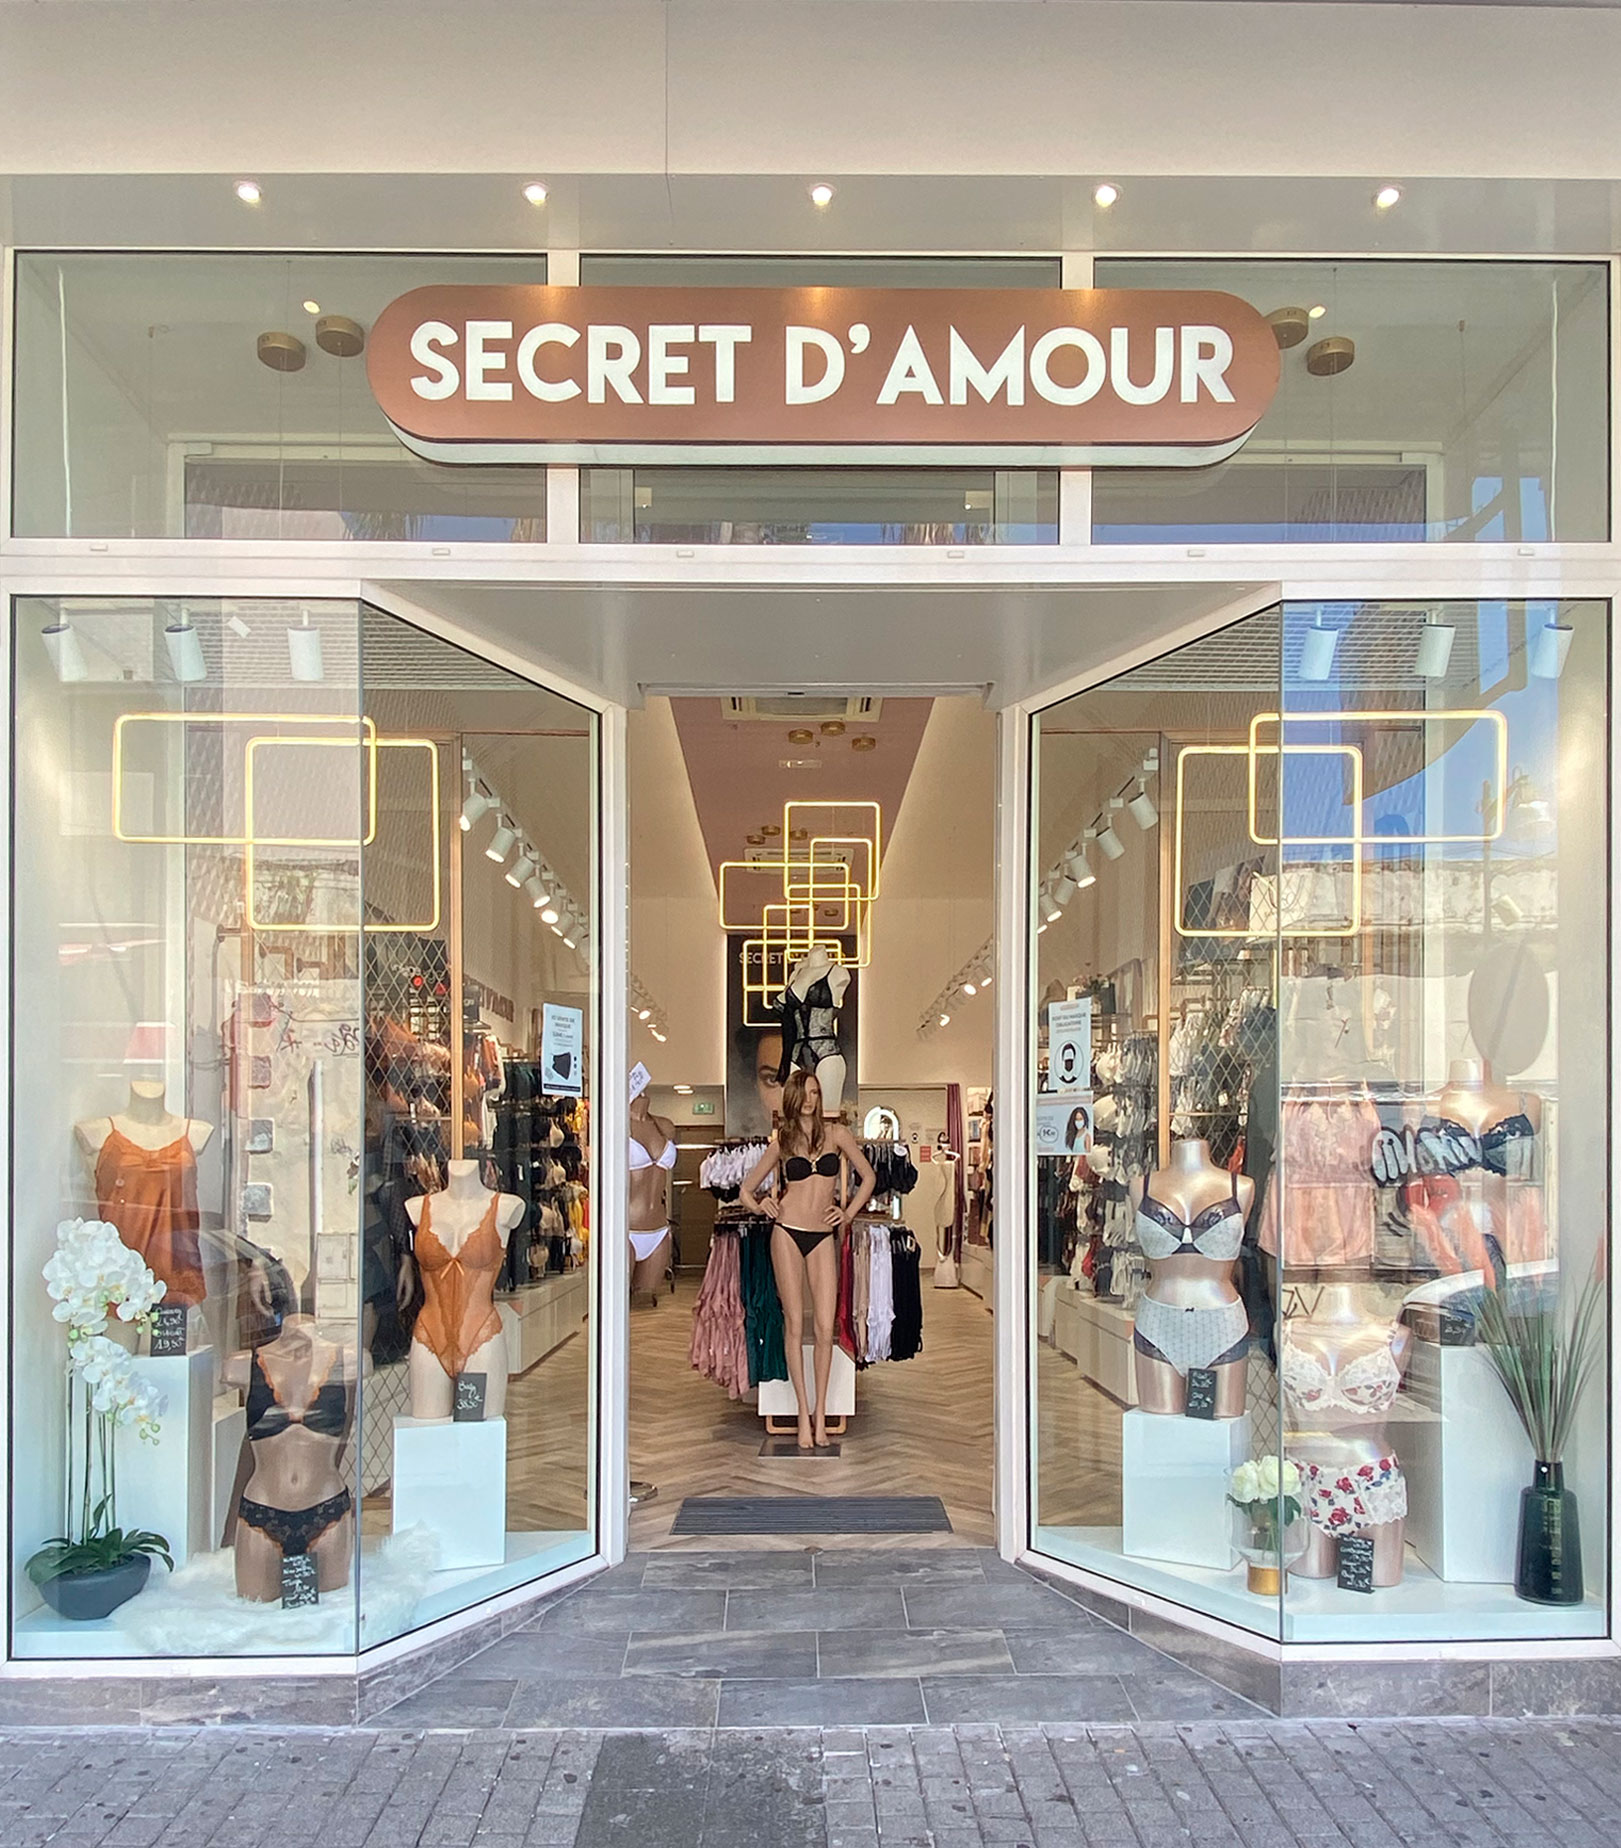 Façade de la boutique de lingerie et dessous Secret d'amour située rue des bons enfants en centre ville de saint-pierre